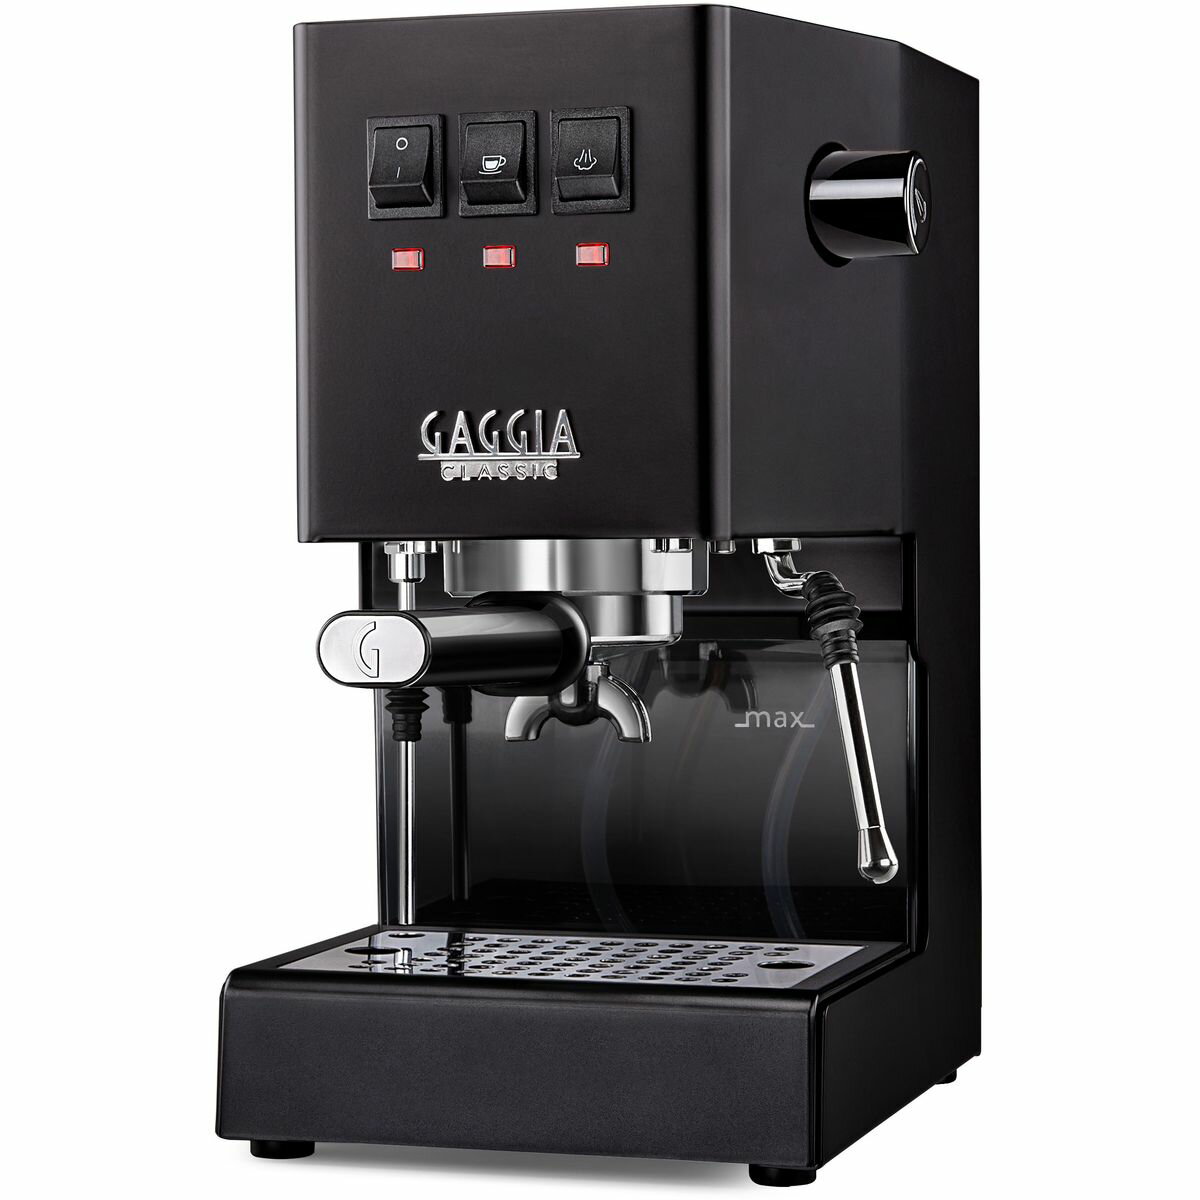 GAGGIA Classic evo pro ブラック エスプレッソマシン SIN035R_030659